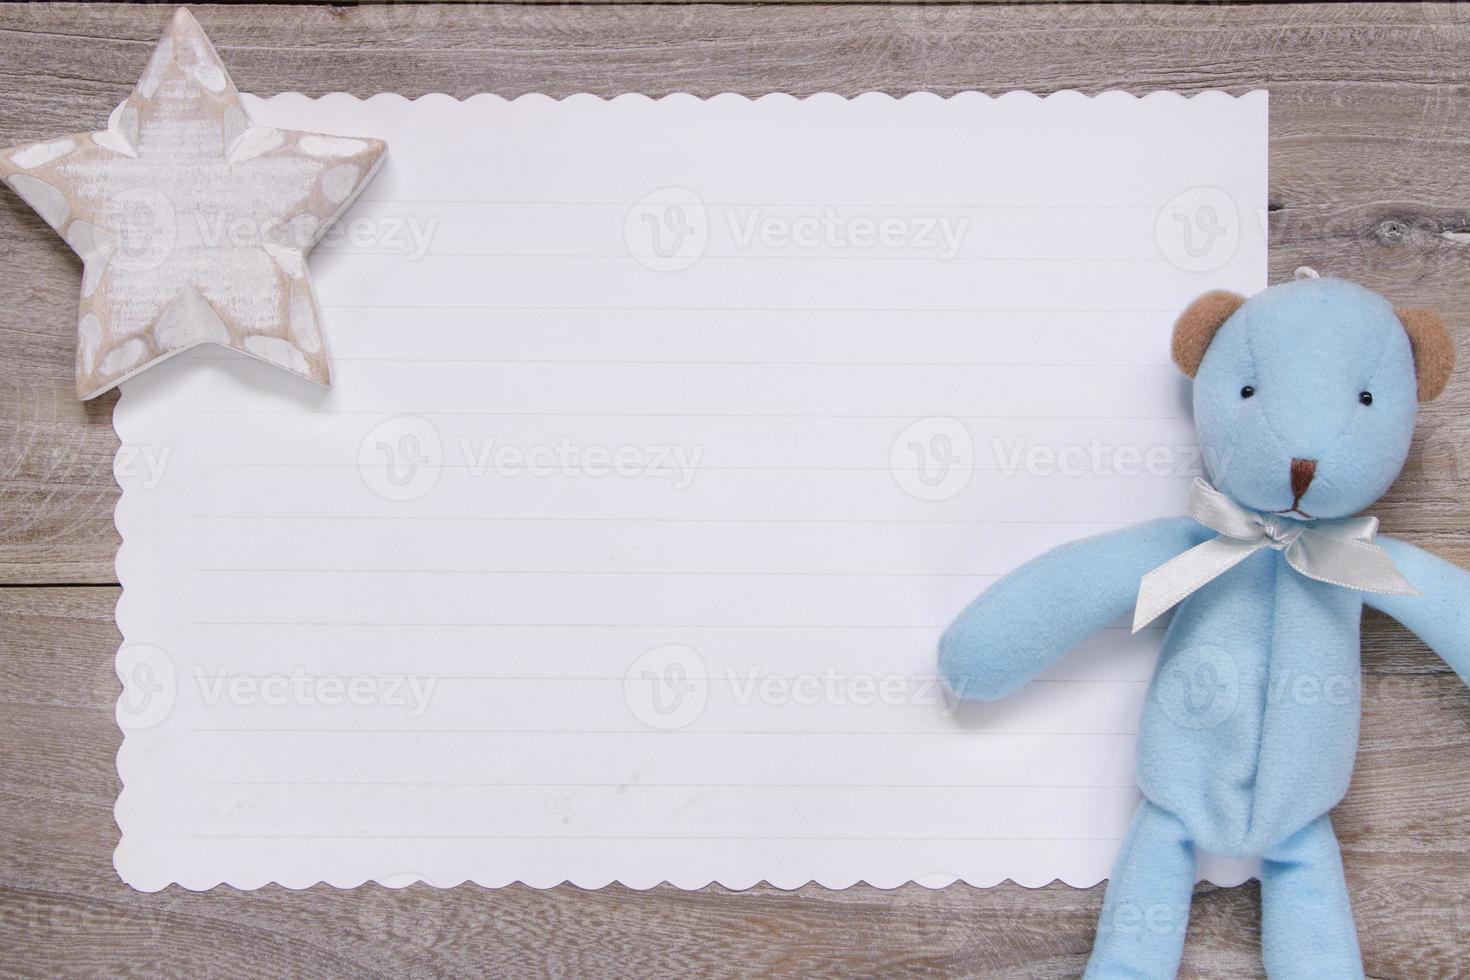 tavola di legno carta da lettere bianca orso blu bambola stella mestiere foto